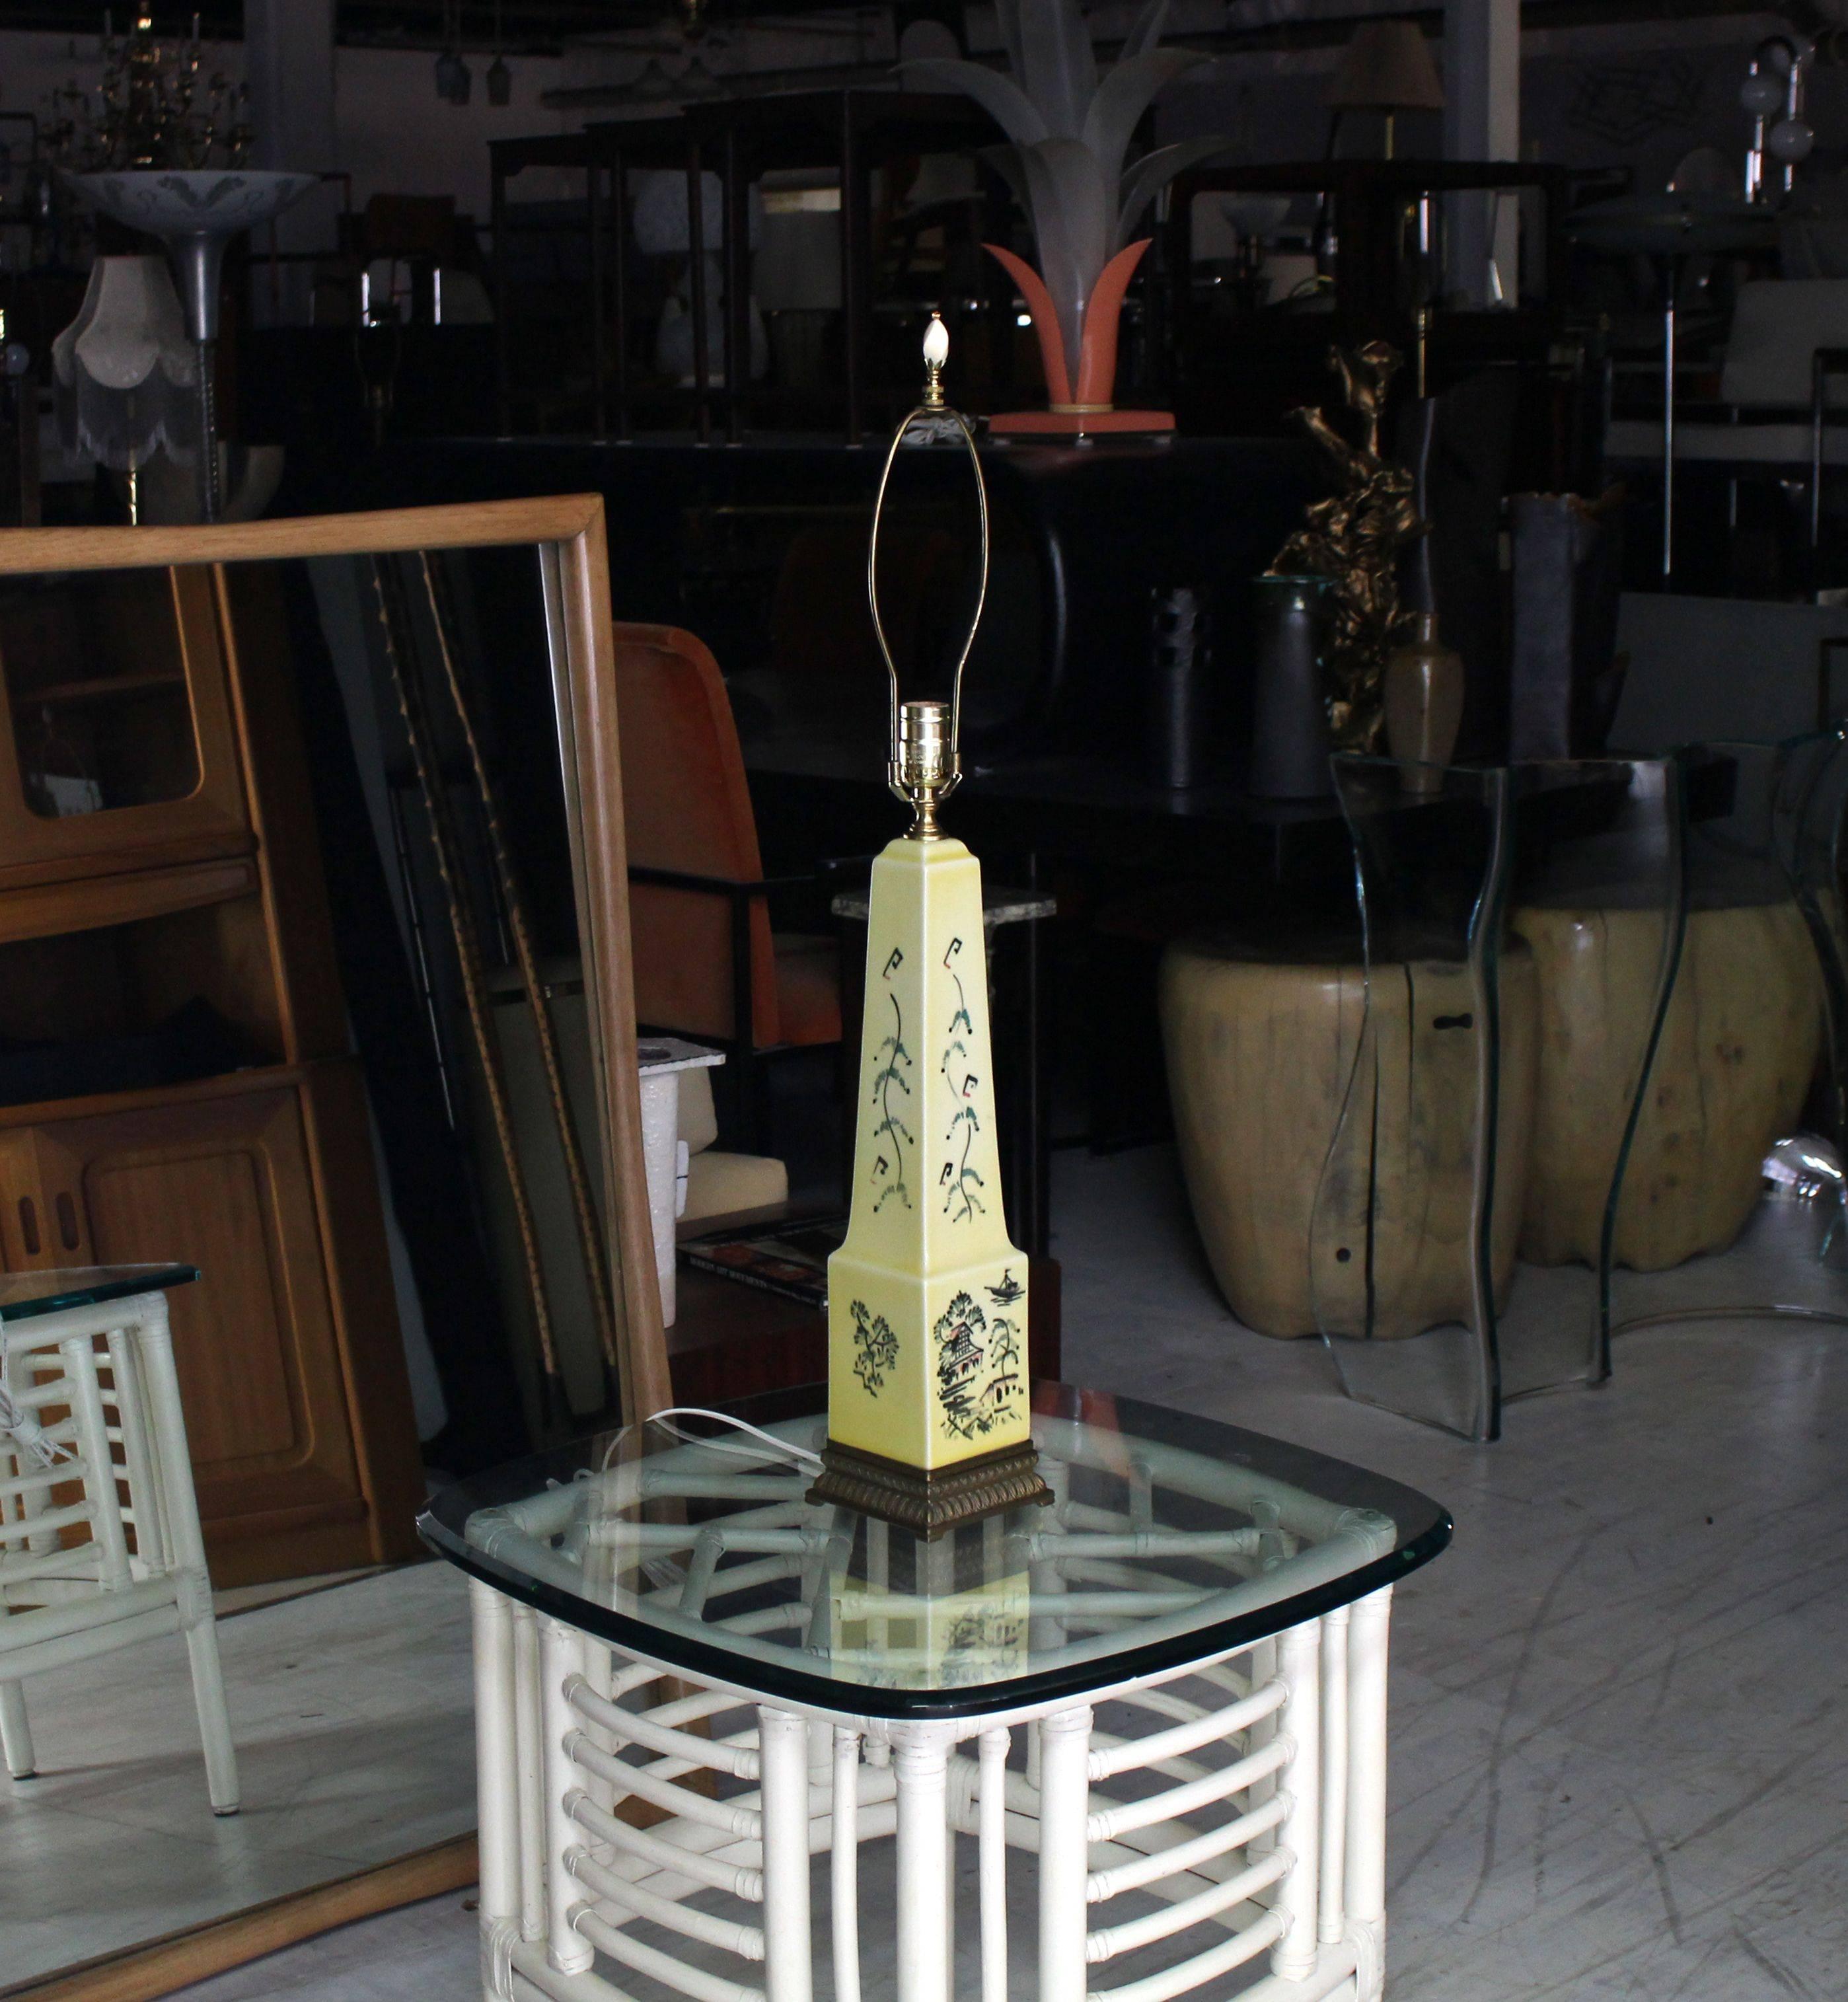 Sehr schöne Mid-Century Modern Obelisk Form Keramik dekoriert Tischlampe auf Messing Basis.